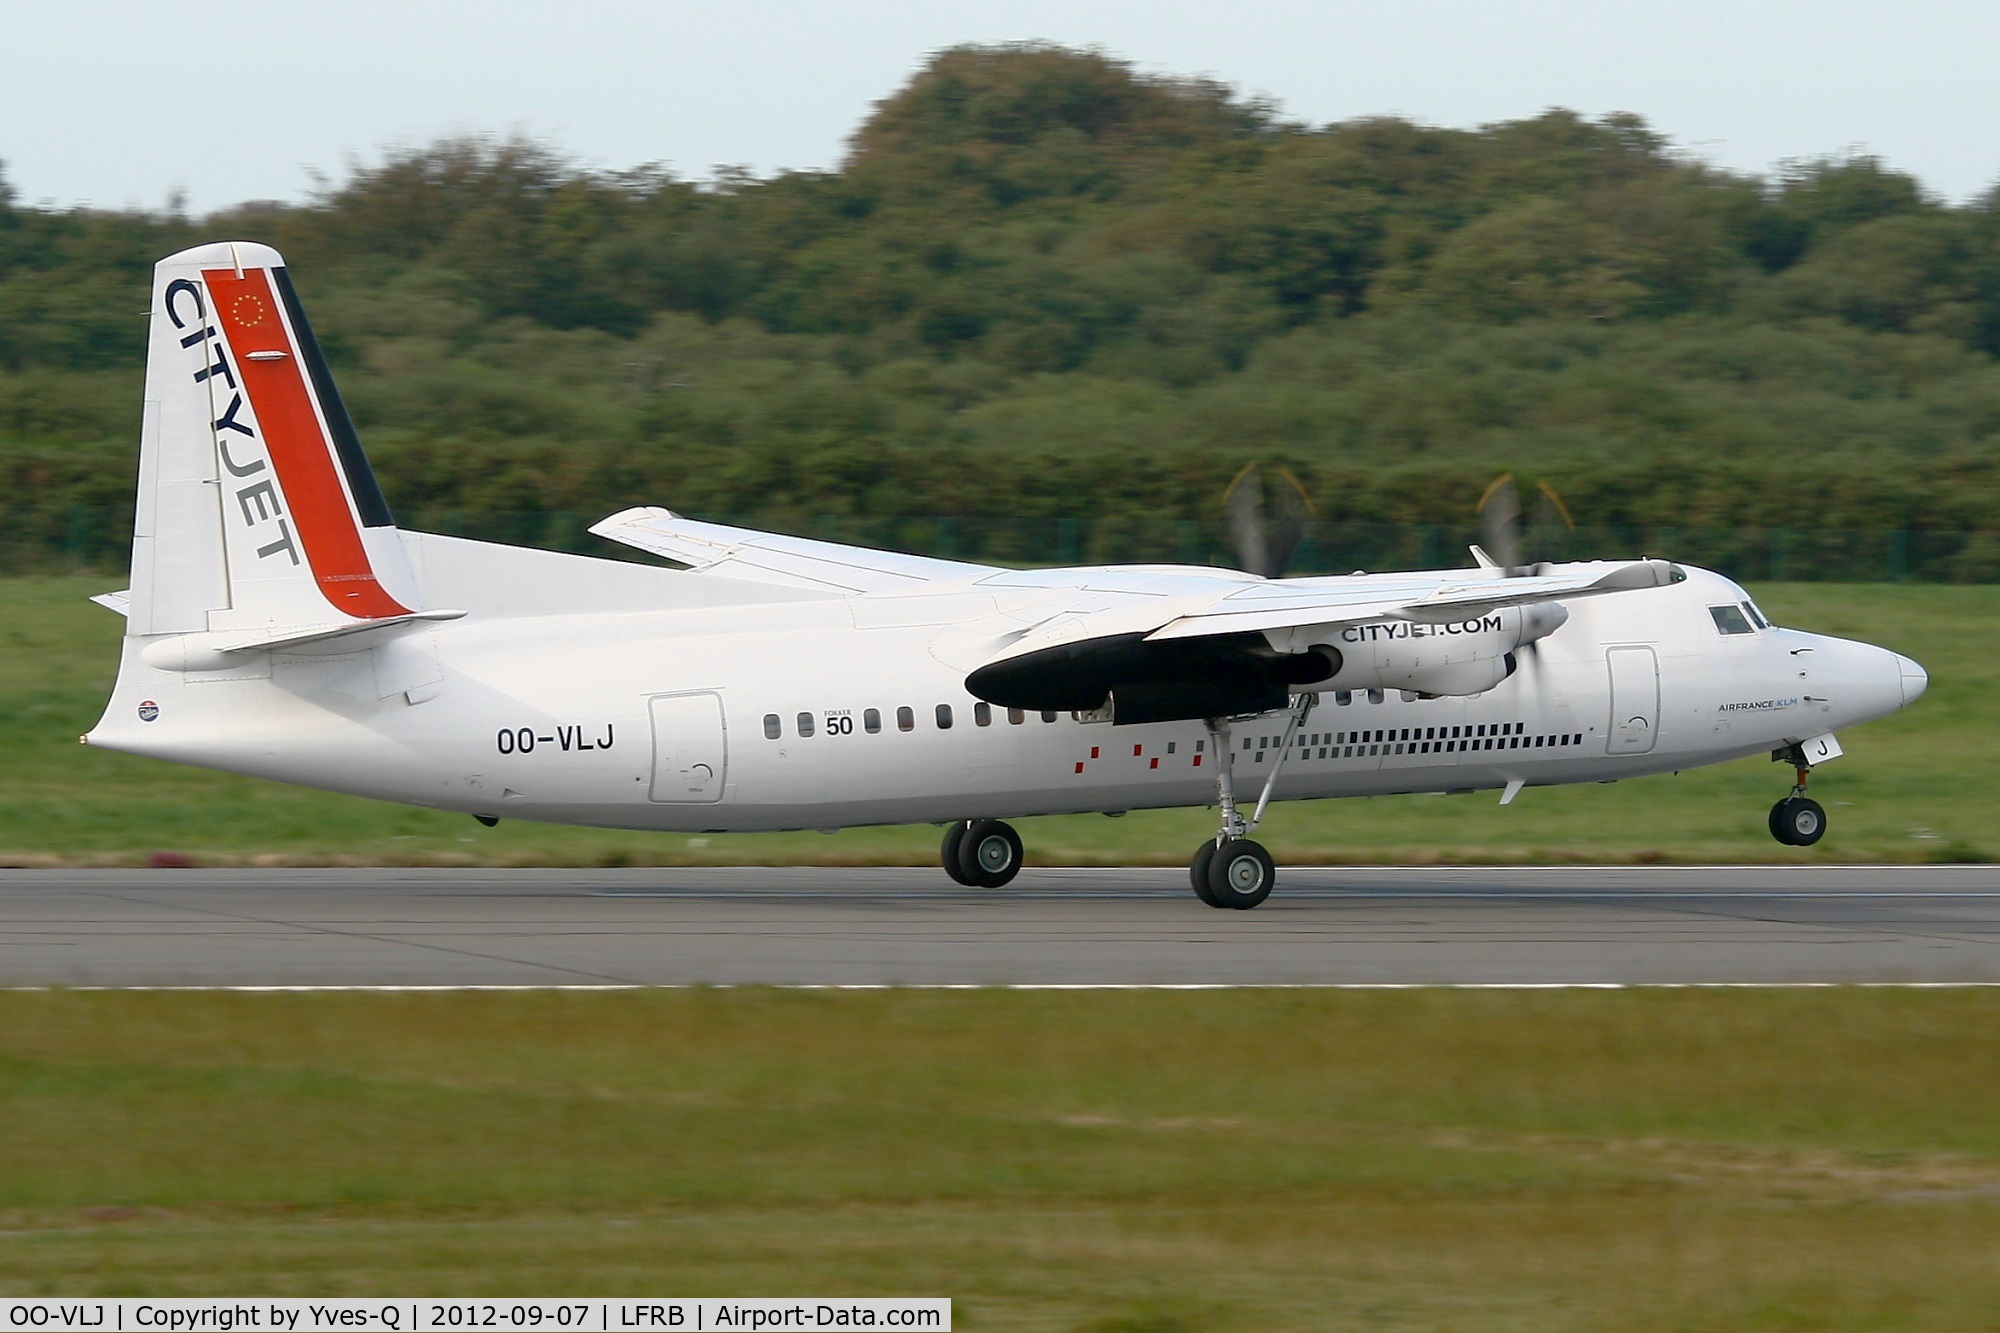 OO-VLJ, 1987 Fokker 50 C/N 20105, Fokker 50, Take off Rwy 07R, Brest-Bretagne Airport (LFRB-BES)